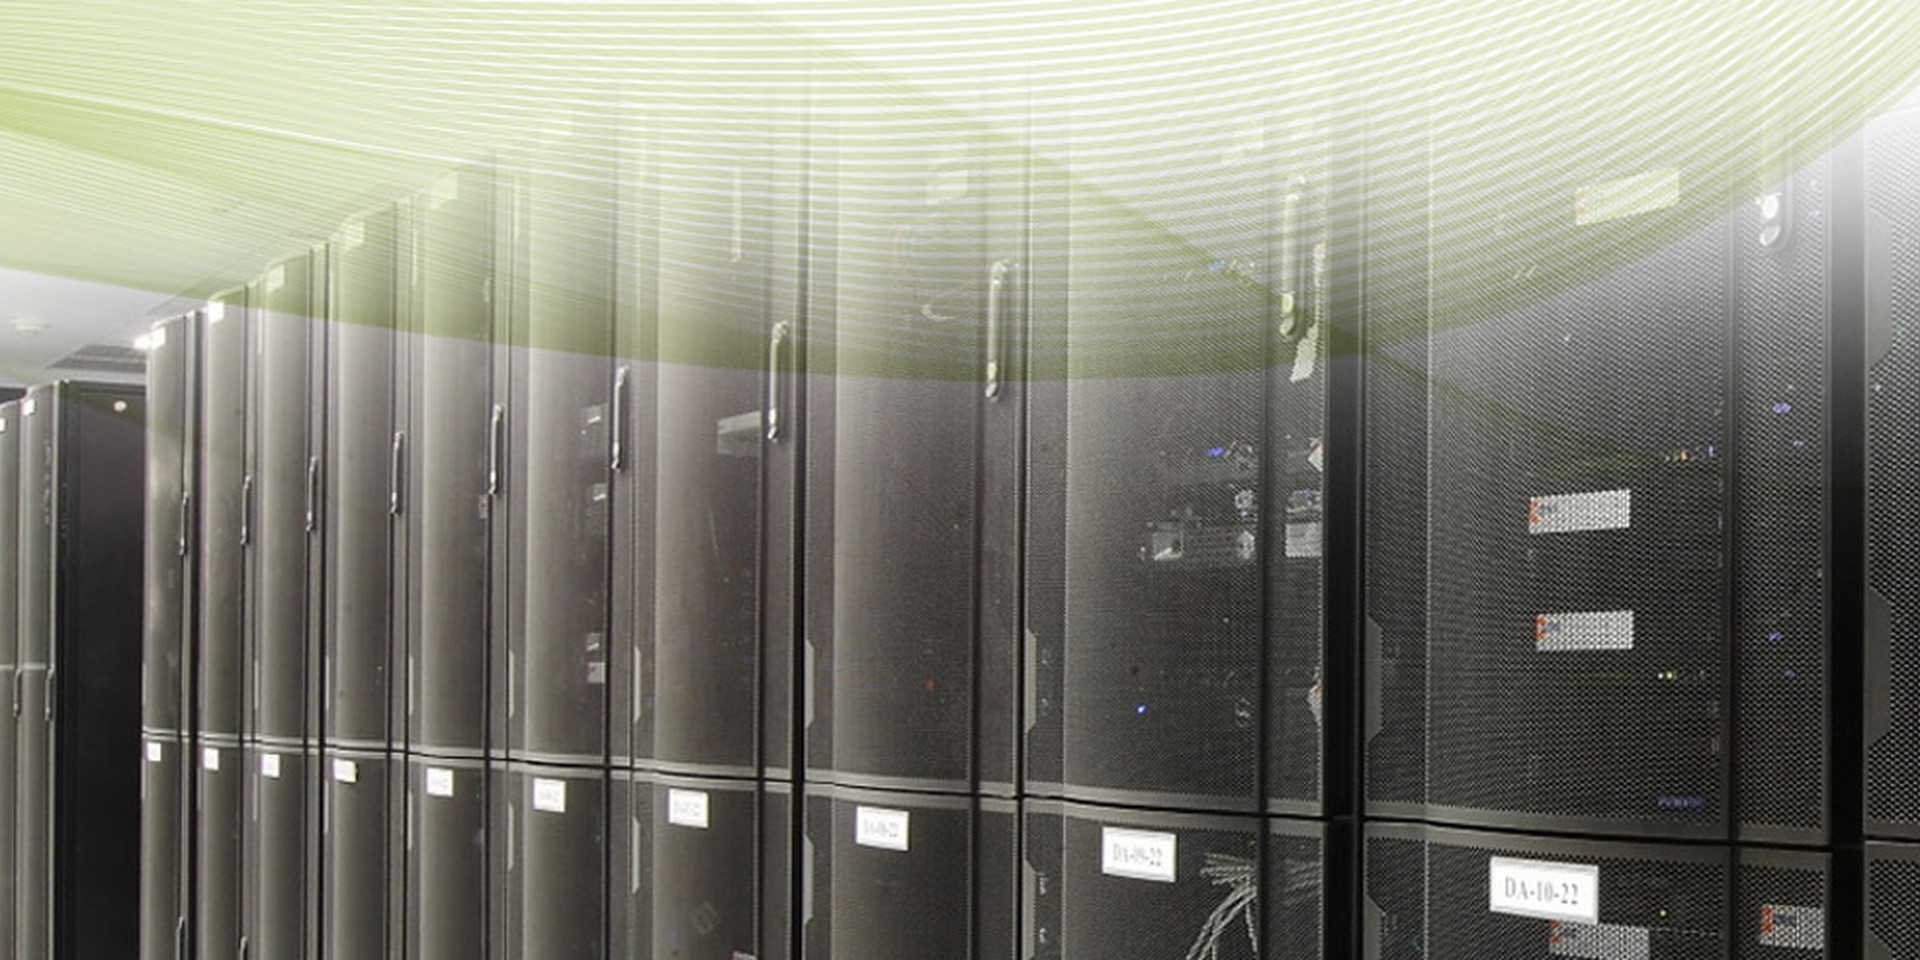 บริการ colocation server คือ บริการรับฝากเครื่อง Server ให้บริการ colocation server โดยฝากเครื่อง server ไว้ในห้องเครื่องที่มีระบบการ รักษาความปลอดภัยสูง ตลอดจนมีการปรับสภาพแวดล้อมของบริการการ Co-Location server ให้เหมาะสมที่สุด เช่น ระบบปรับอากาศ ระบบควบคุมความชื้น และระบบดับเพลิง นอกจากนี้ Co-Location server ยังอยู่บนเครือข่ายอินเตอร์เน็ตความเร็วสูง จึงมั่นใจได้ ในเรื่องความปลอดภัย เพื่อให้ผู้เข้าชมสามารถเข้ามาดู Website ได้อย่างรวดเร็ว ซึ่ง Co-Location server เป็นการประหยัดต้นทุนอย่างมาก และยังสามารถบริหารข้อมูลและจัดการ Server ได้ด้วยตนเองผ่านทาง Internet ตลอด 24 ชั่วโมง
บริการ Co-Location server นี้เหมาะสำหรับ บริษัท/ห้างร้าน ท่านผู้ประกอบการ Web Hosting หรือ บุคคลทั่วไป ที่มีปริมาณ การใช้งานพื้นที่ และปริมาณการโอนย้าย ที่สูงมากกว่าปกติ มีเครื่อง Server เป็นของตนเองแล้ว และกำลังมองหา สถานที่ฝากวางเครื่อง โดยบริการCo Location เครื่อง server ของท่านจะได้รับ การเชื่อมต่อตลอด 24 ชั่วโมงบน เครือข่ายอินเตอร์เน็ตความเร็วสูง จาก ISP มาตรฐานชั้นนำของประเทศ โดยท่านสามารถ เลือกวาง Co-Location server ได้หลายที่คือ CAT, Pacific Internet และ CS-Loxinfo